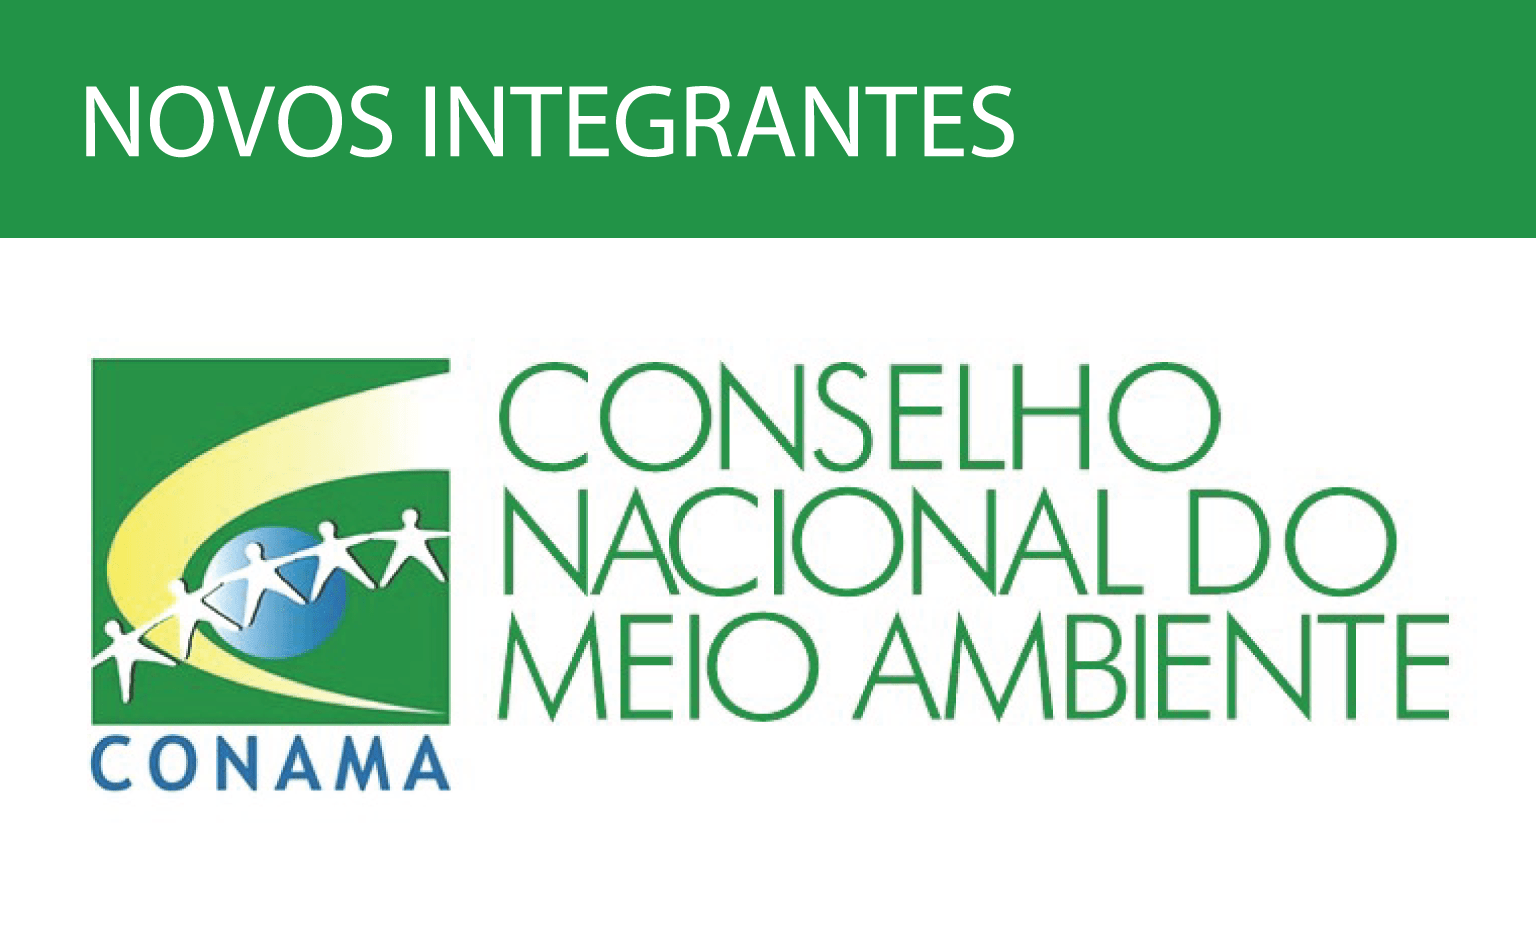 Logotipo do Conselho Nacional do Meio Ambiente, com uma tarja verde na qual está escrito "novos integrantes"